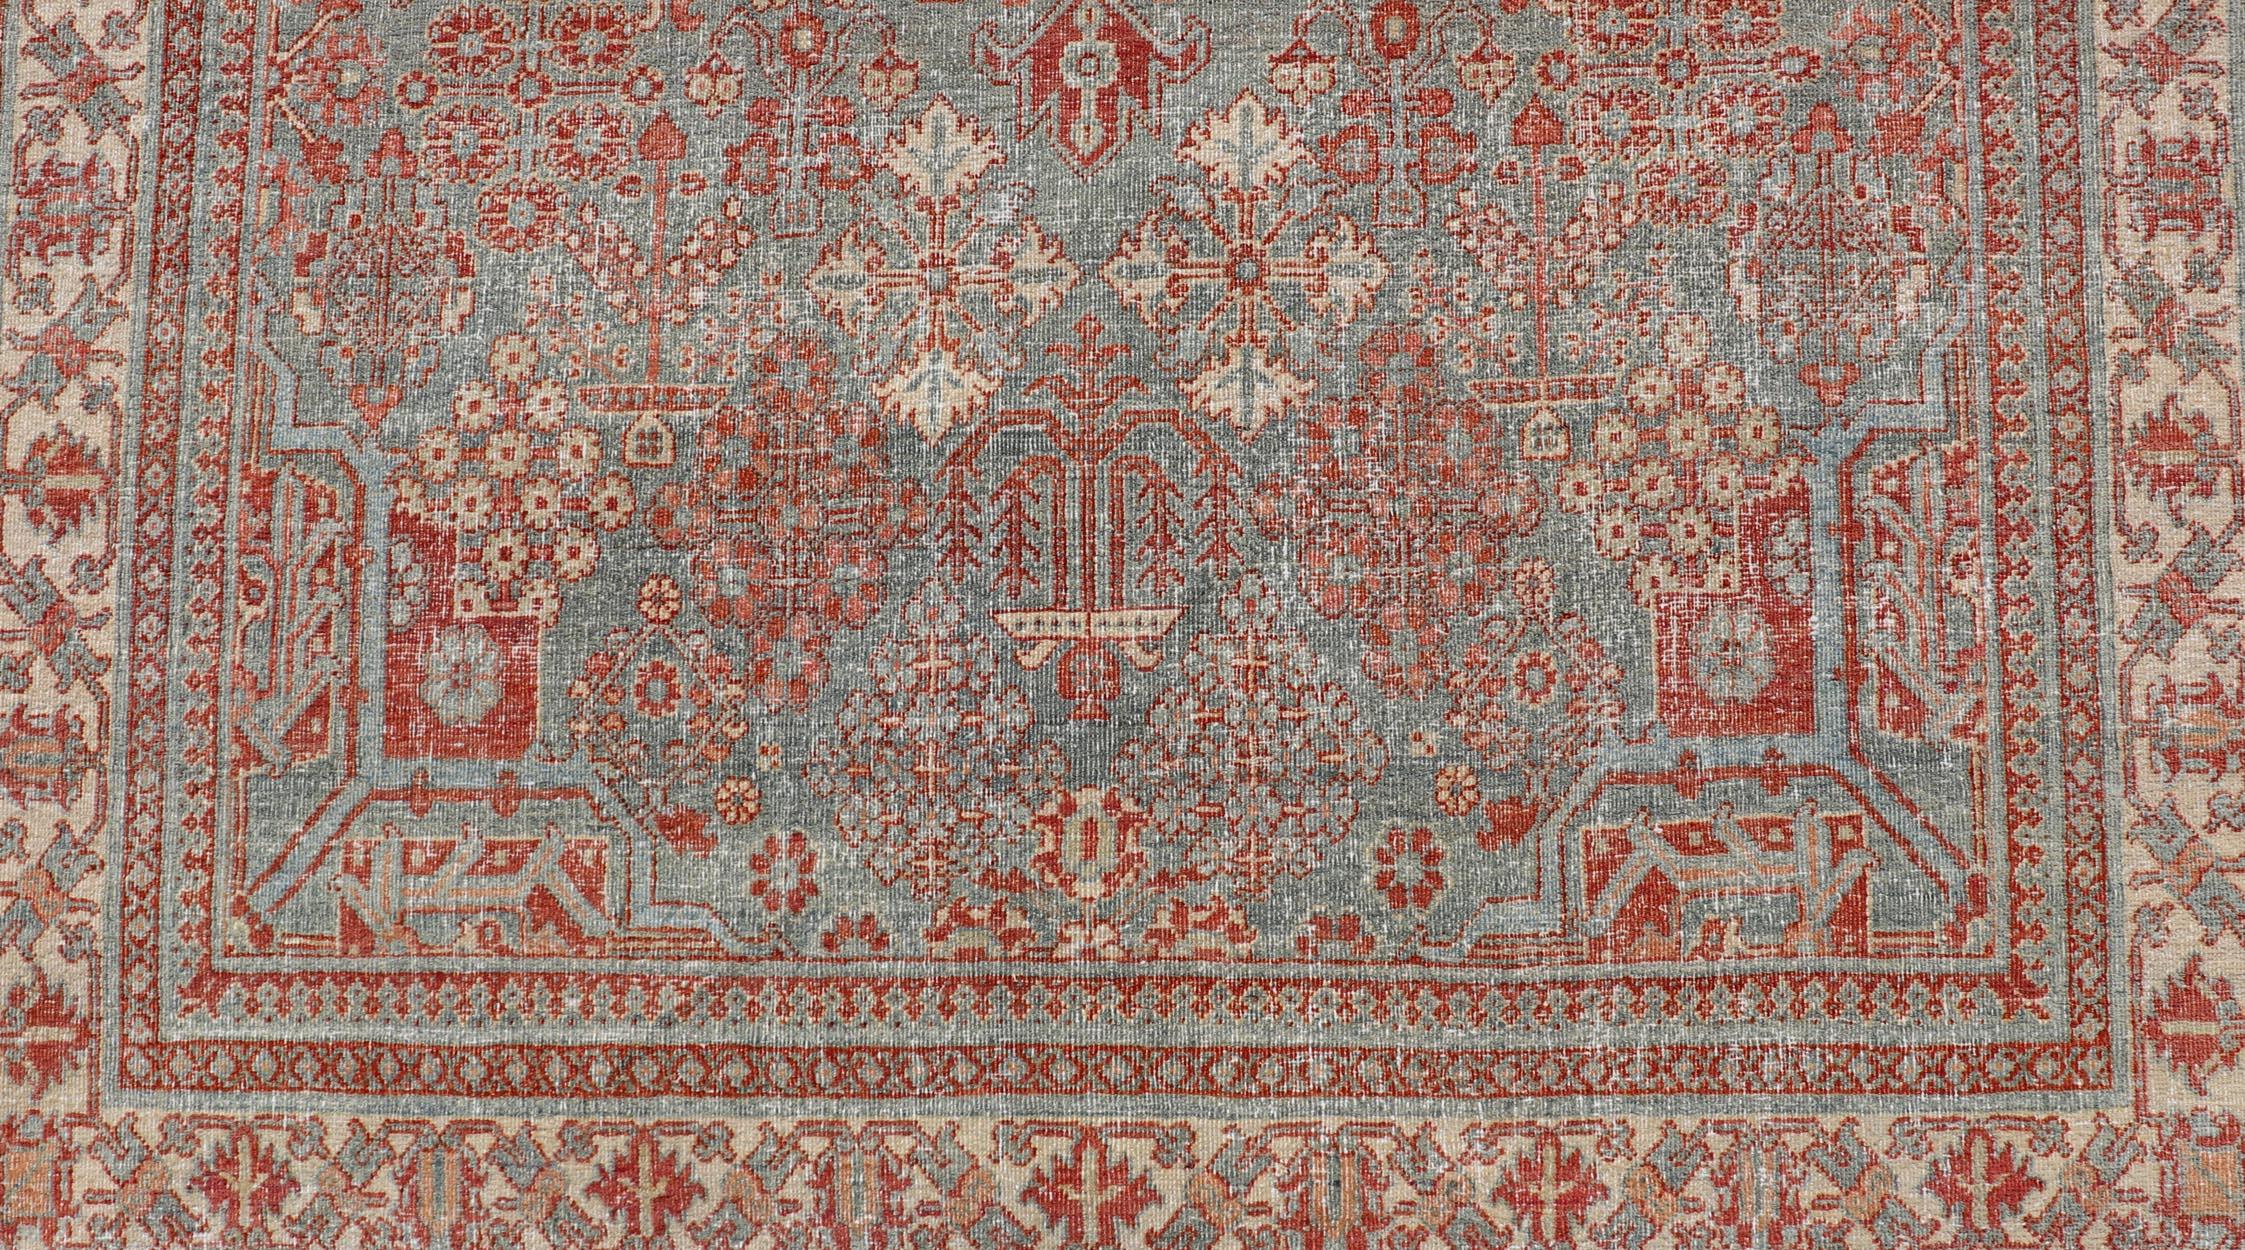 Antiker persischer Joshegan-Teppich mit geometrischem Medaillon-Design in sanftem Rot. Keivan Woven Arts / Teppich EMB-22192-15092, Herkunftsland / Art: Iran / Joshegan, um 1920
Maße: 4'2 x 6'10 
Dieser antike Joshegan-Teppich aus dem Iran der